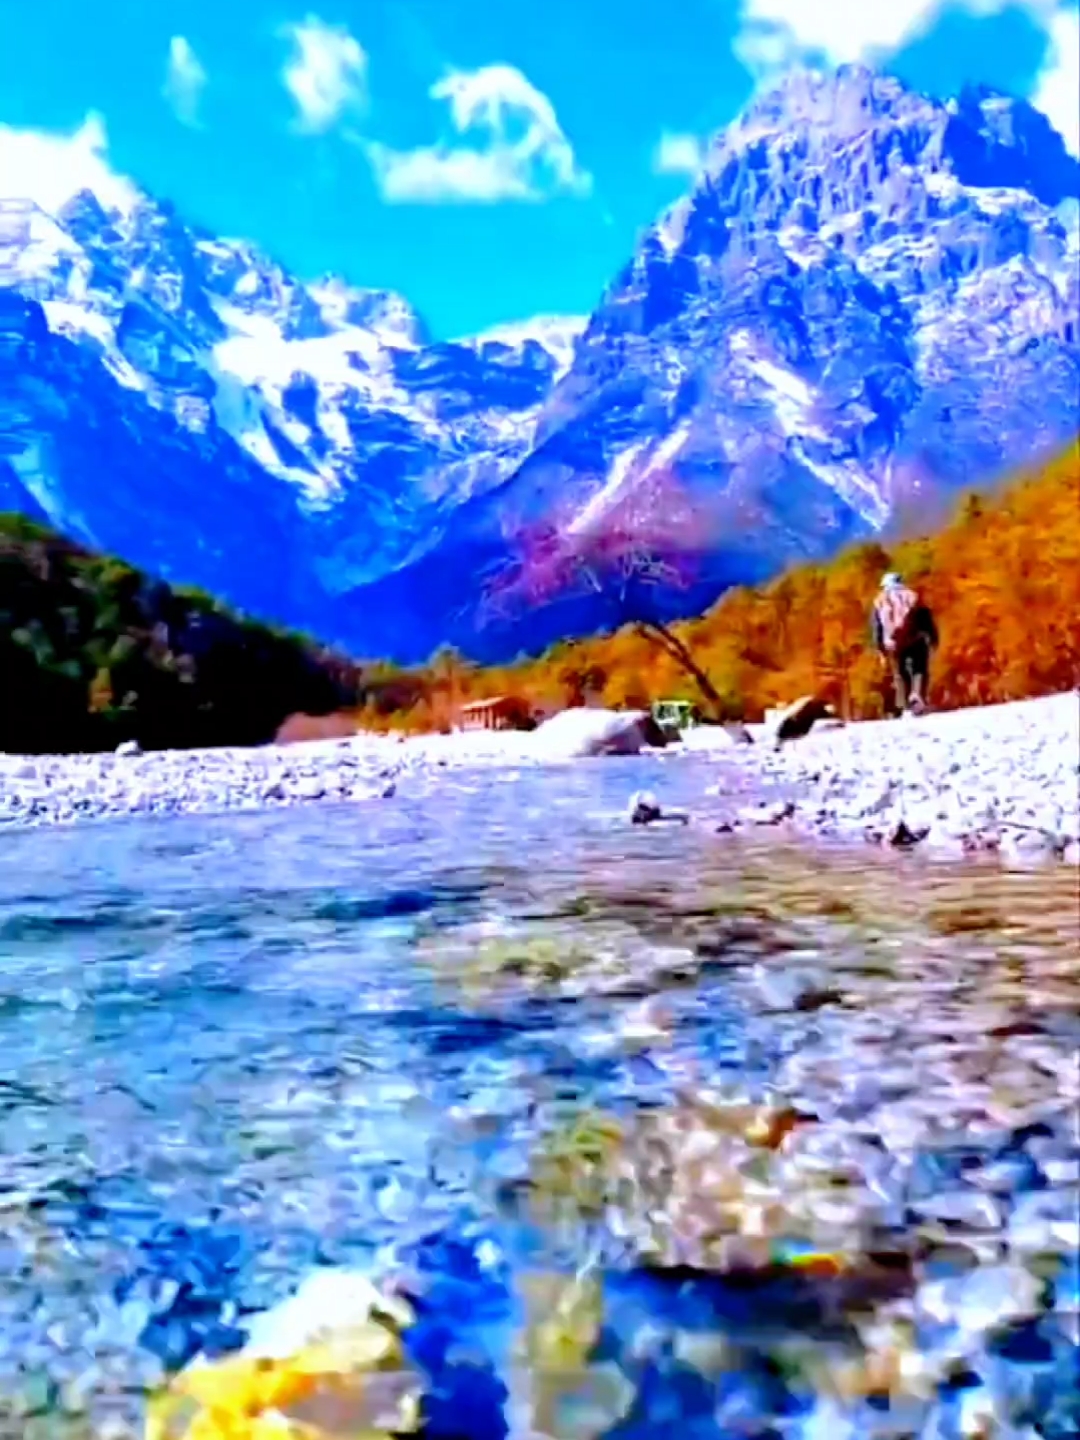 玉龙雪山的雪山与蓝月谷的绿水相拥，演绎着大自然的激情与浪漫